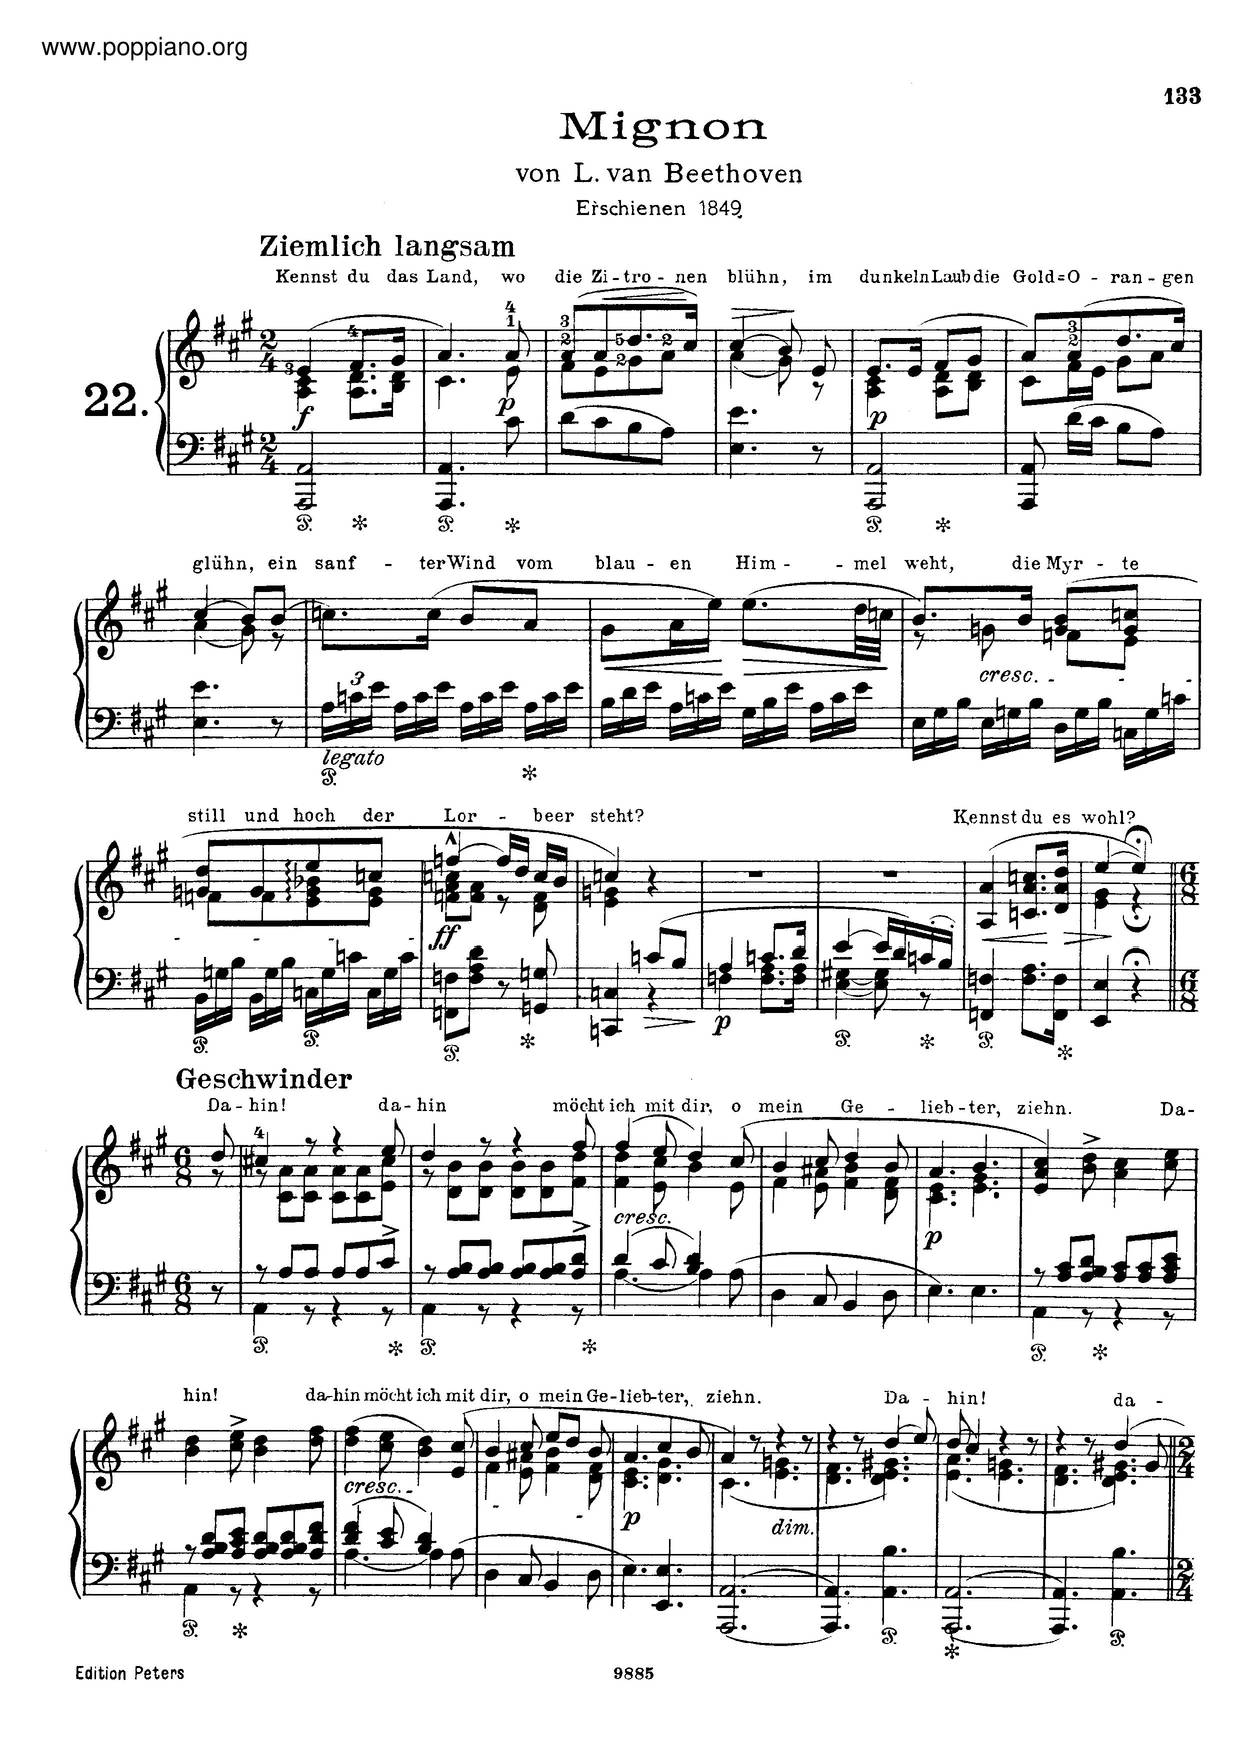 6 Lieder Von Goethe, By Beethoven, S.468 Score